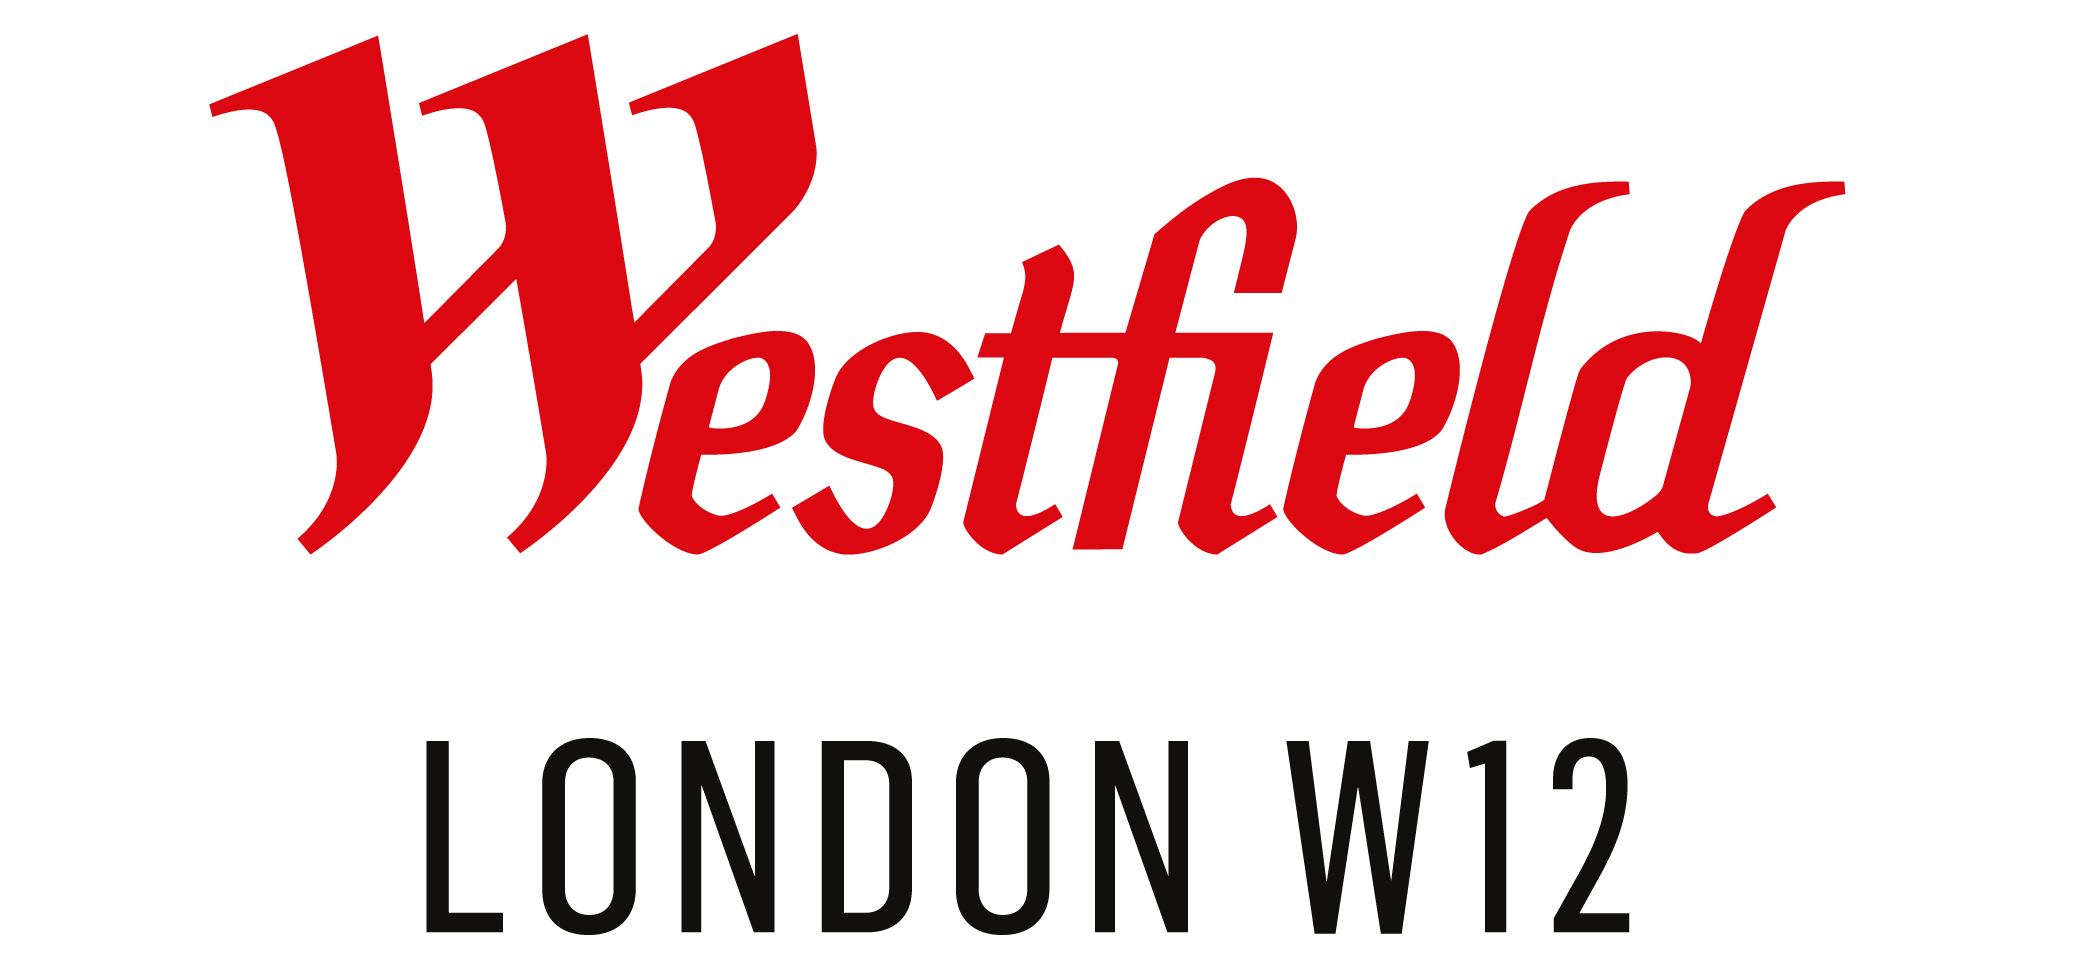 Appointedd Online Booking App Westfield London.